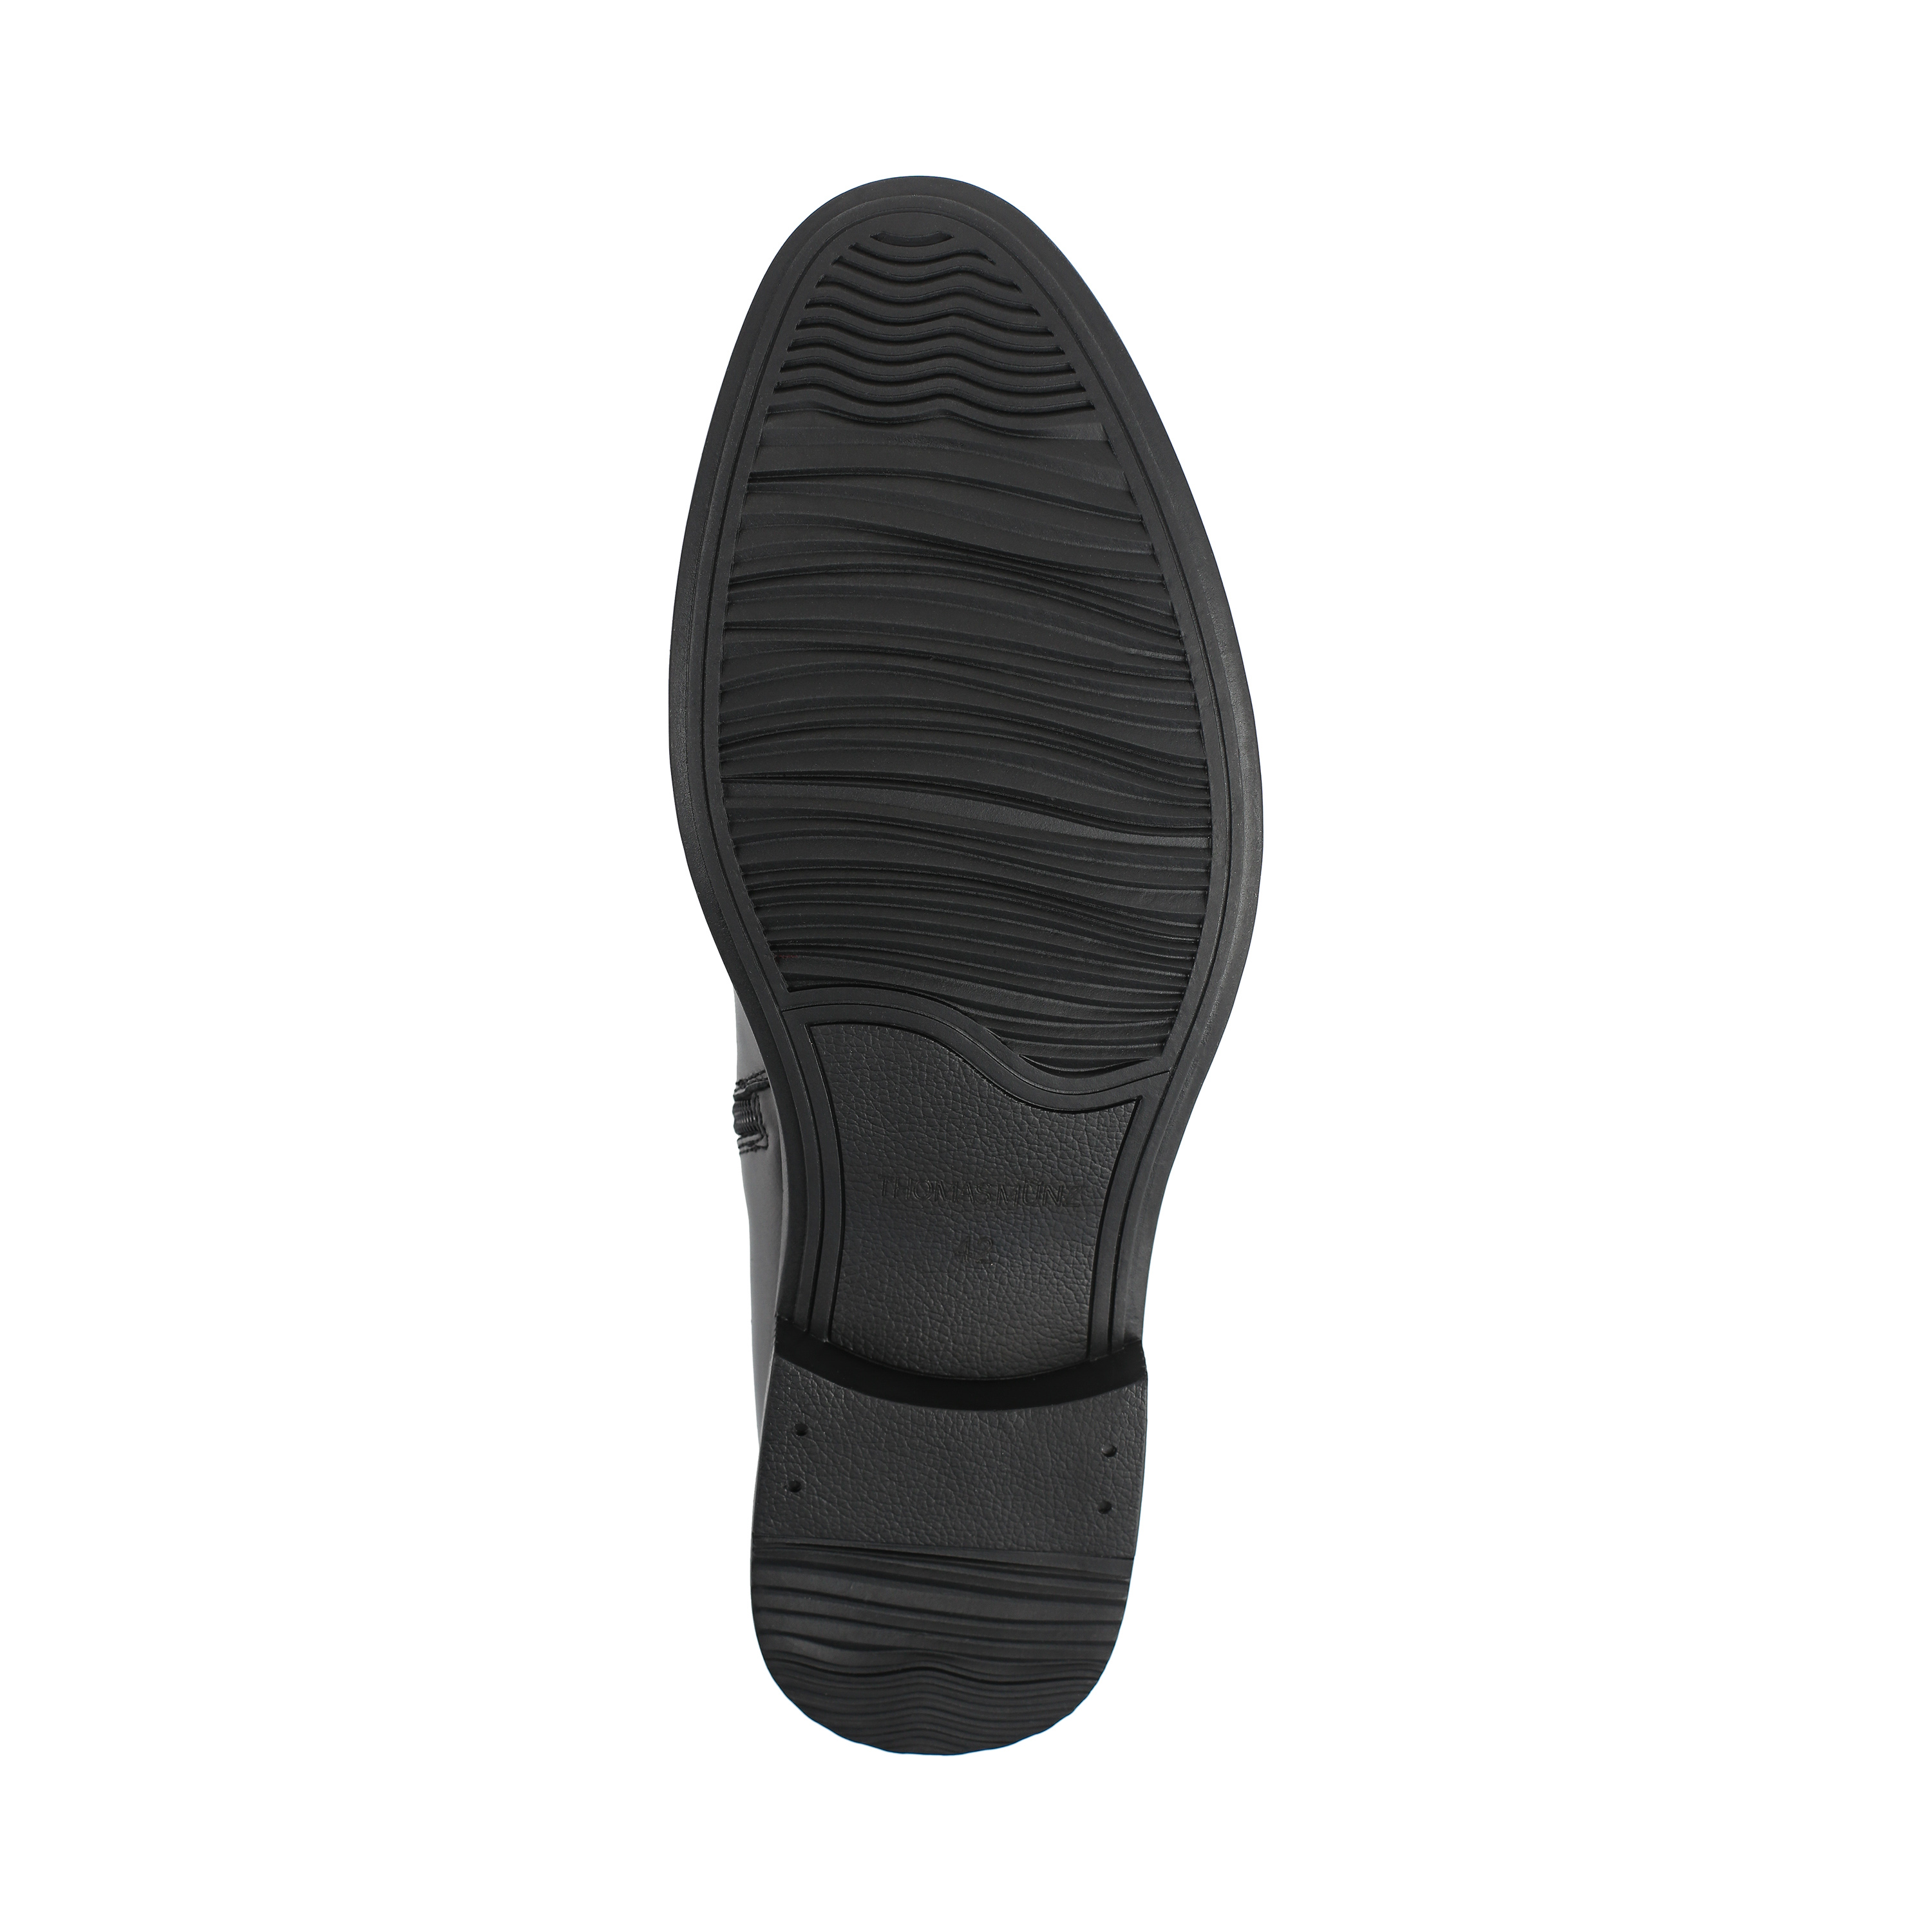 Ботинки Thomas Munz 73-080B-2101, цвет черный, размер 40 дерби - фото 4